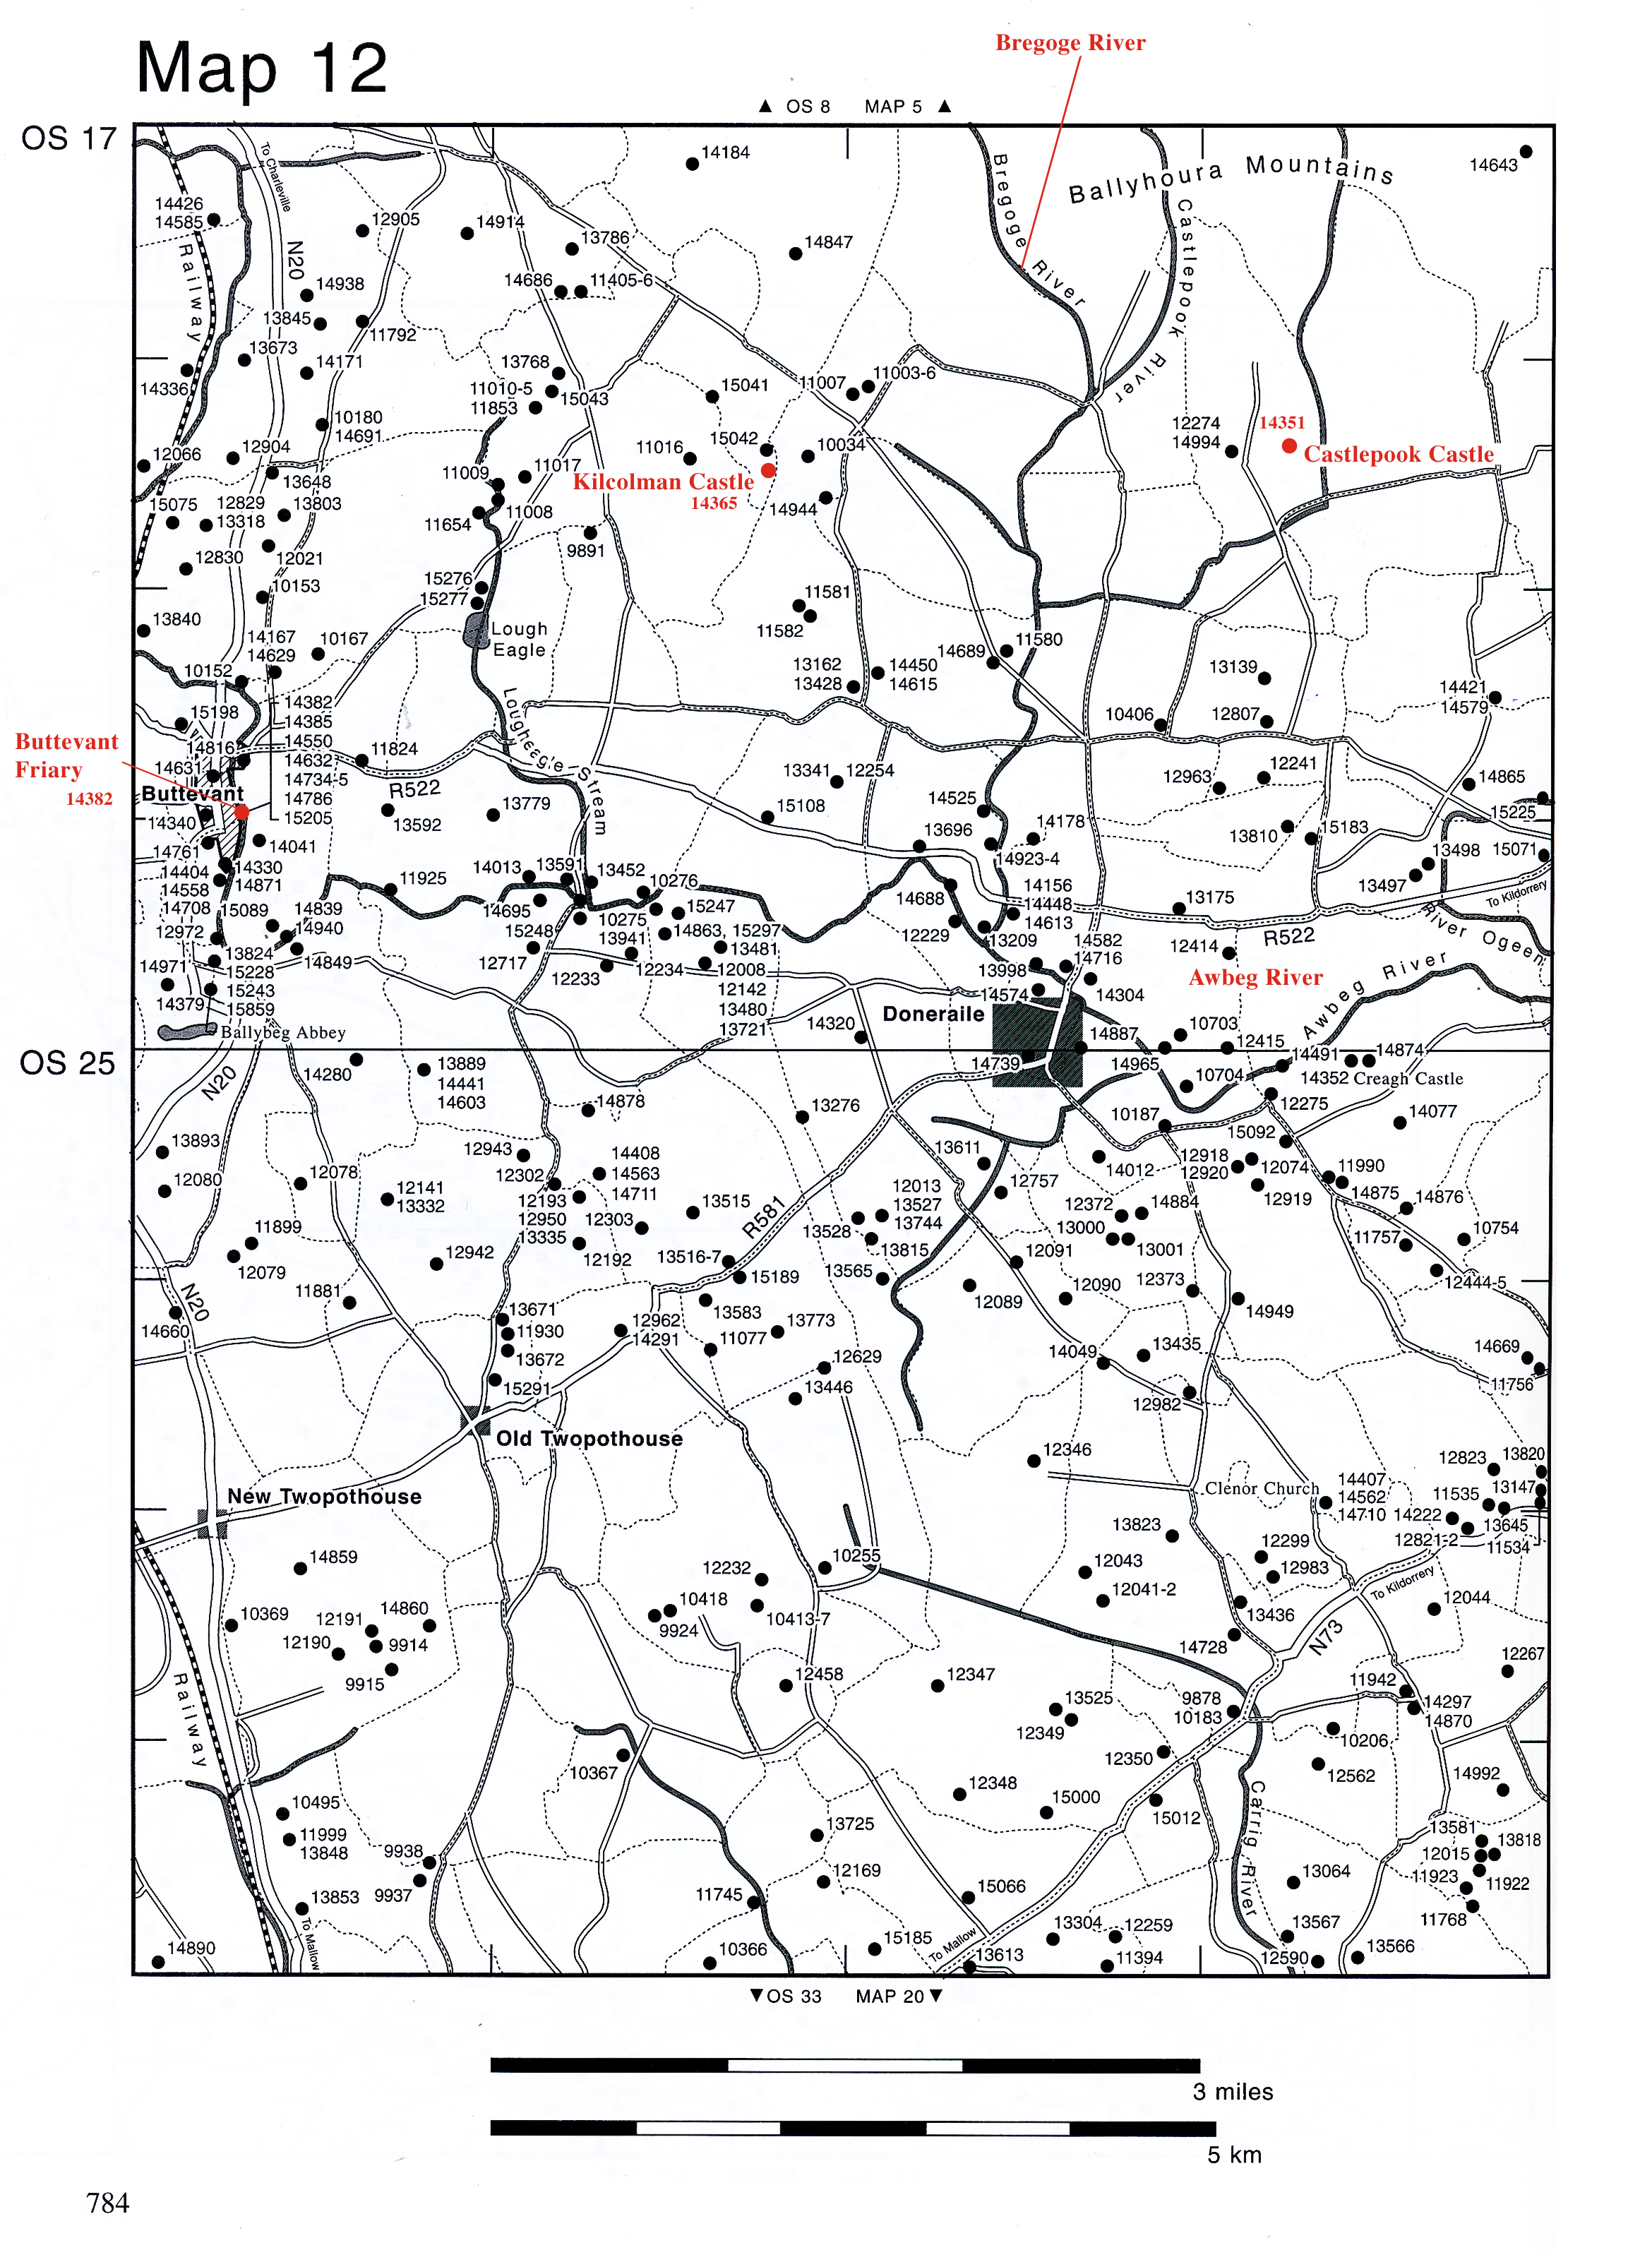 14365 Kilcolman Middle Map:12